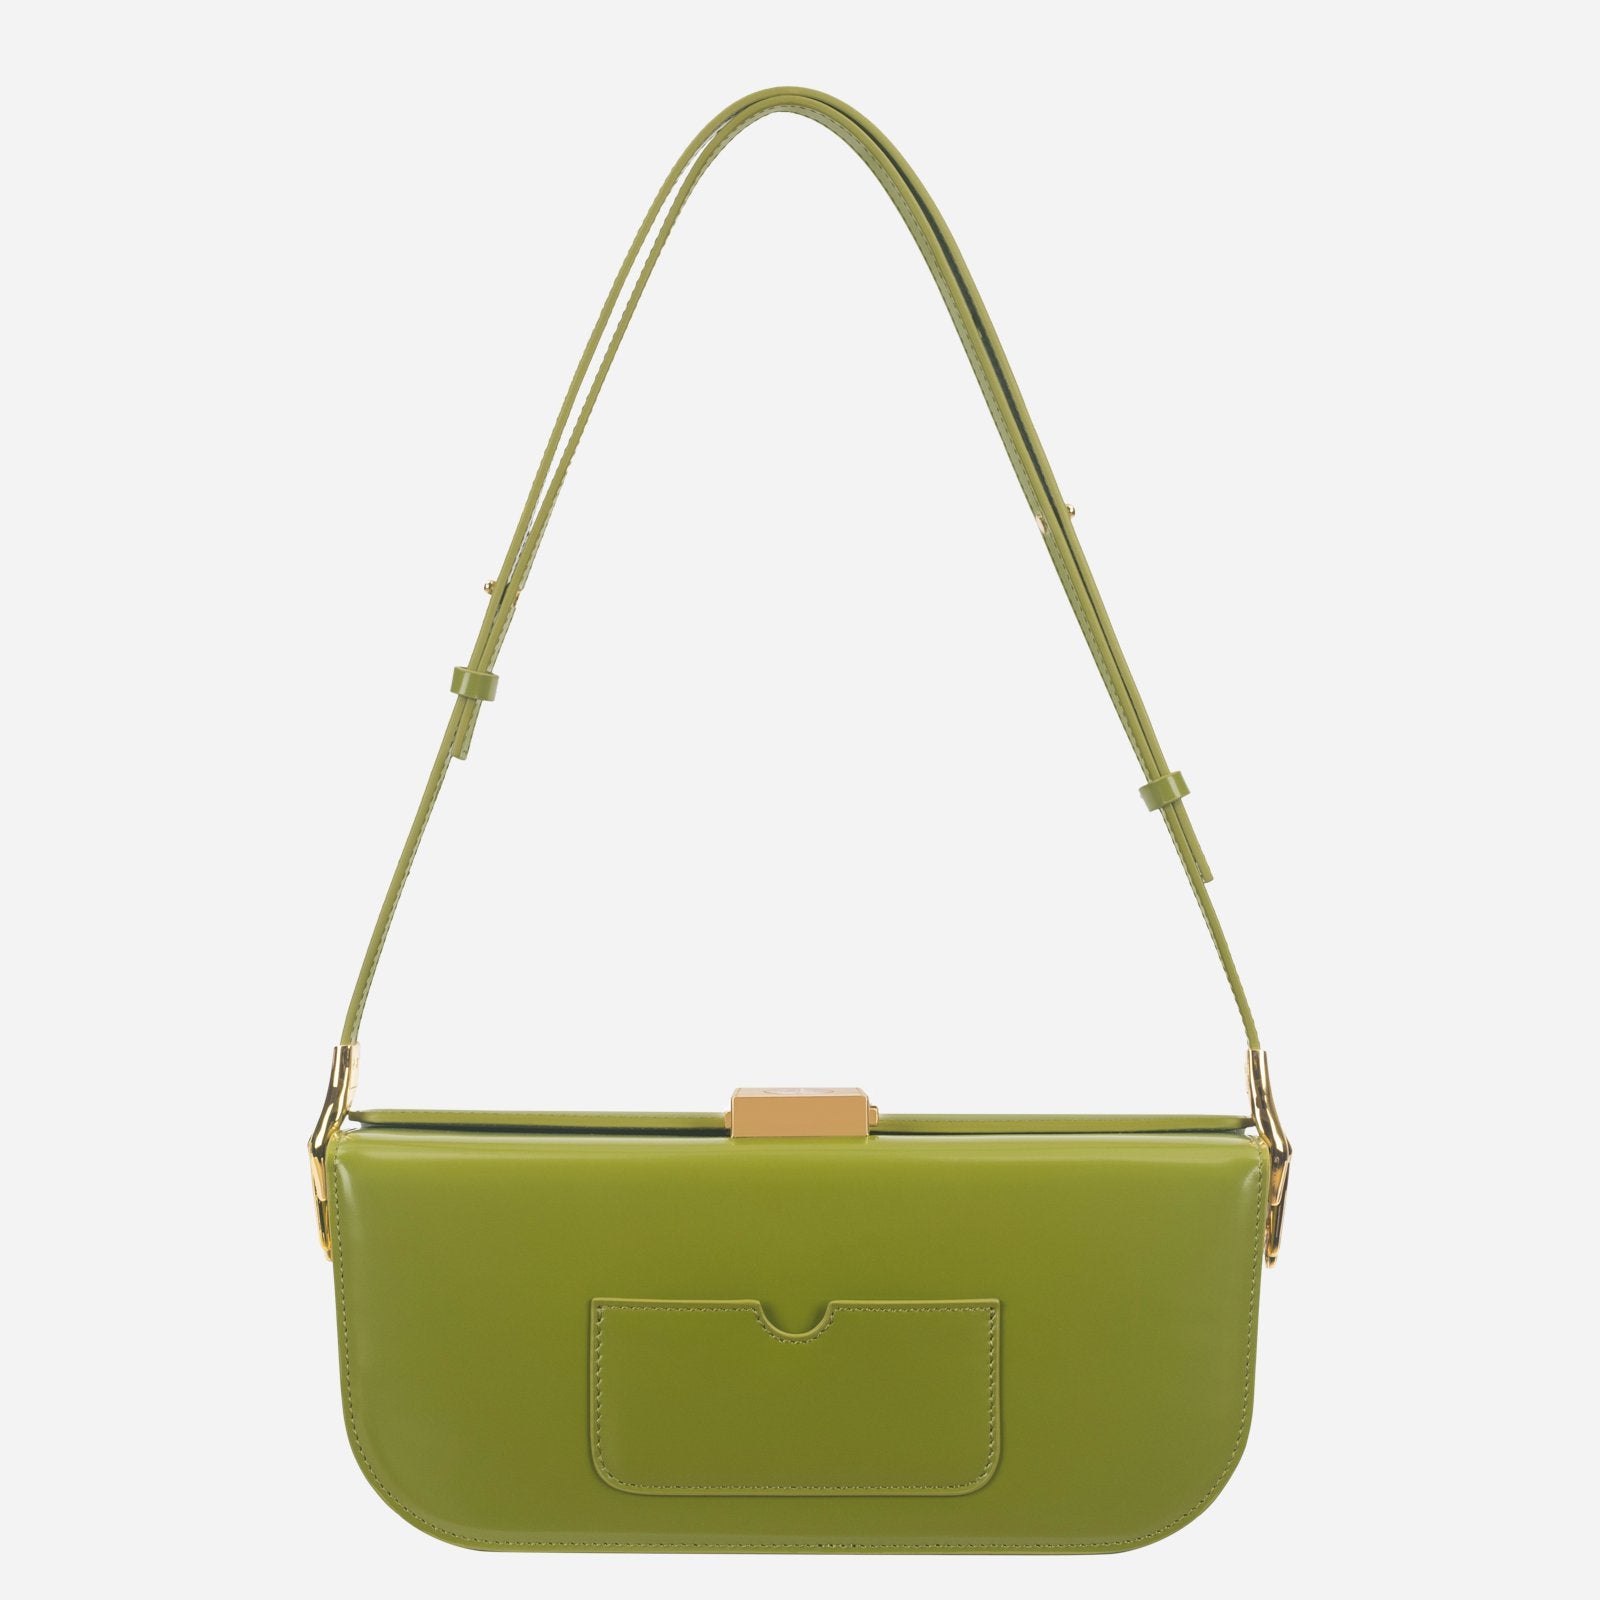 Clock Green Baguette Bag